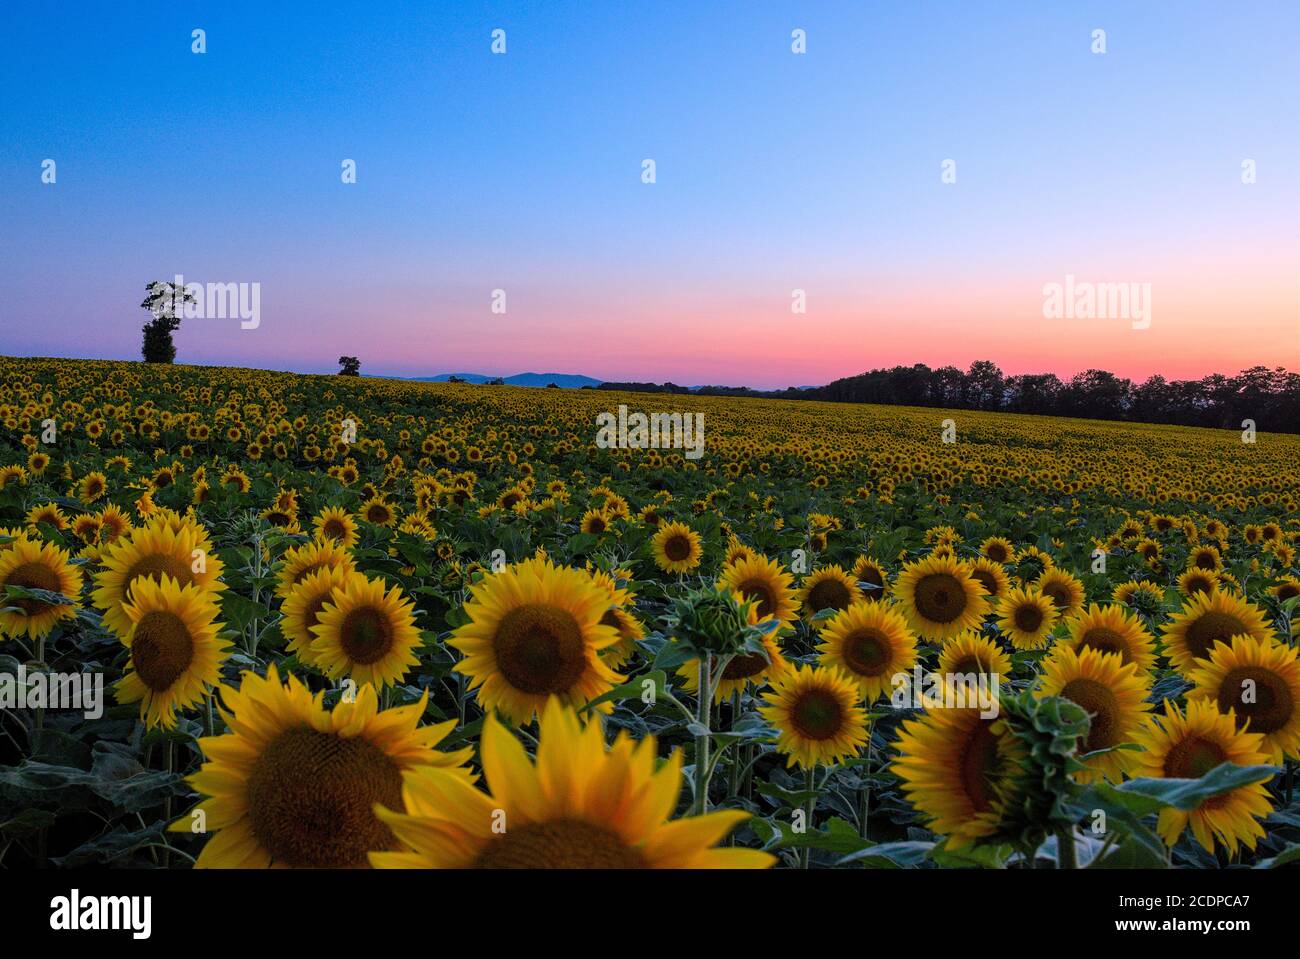 Sonnenblumenfeld bei abendlichen Gegenlicht 3 Foto Stock